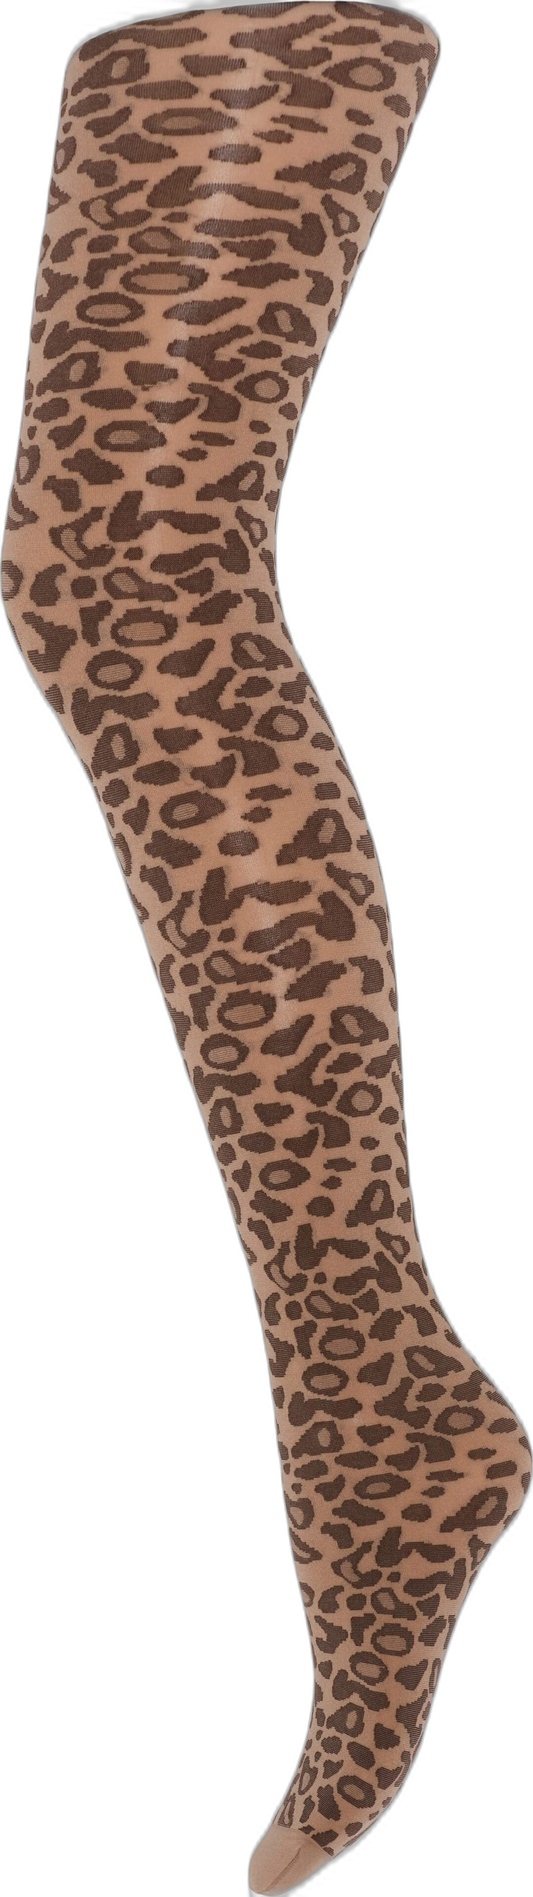 Strømpebukser i Leopard. fra HYPE THE DETAIL